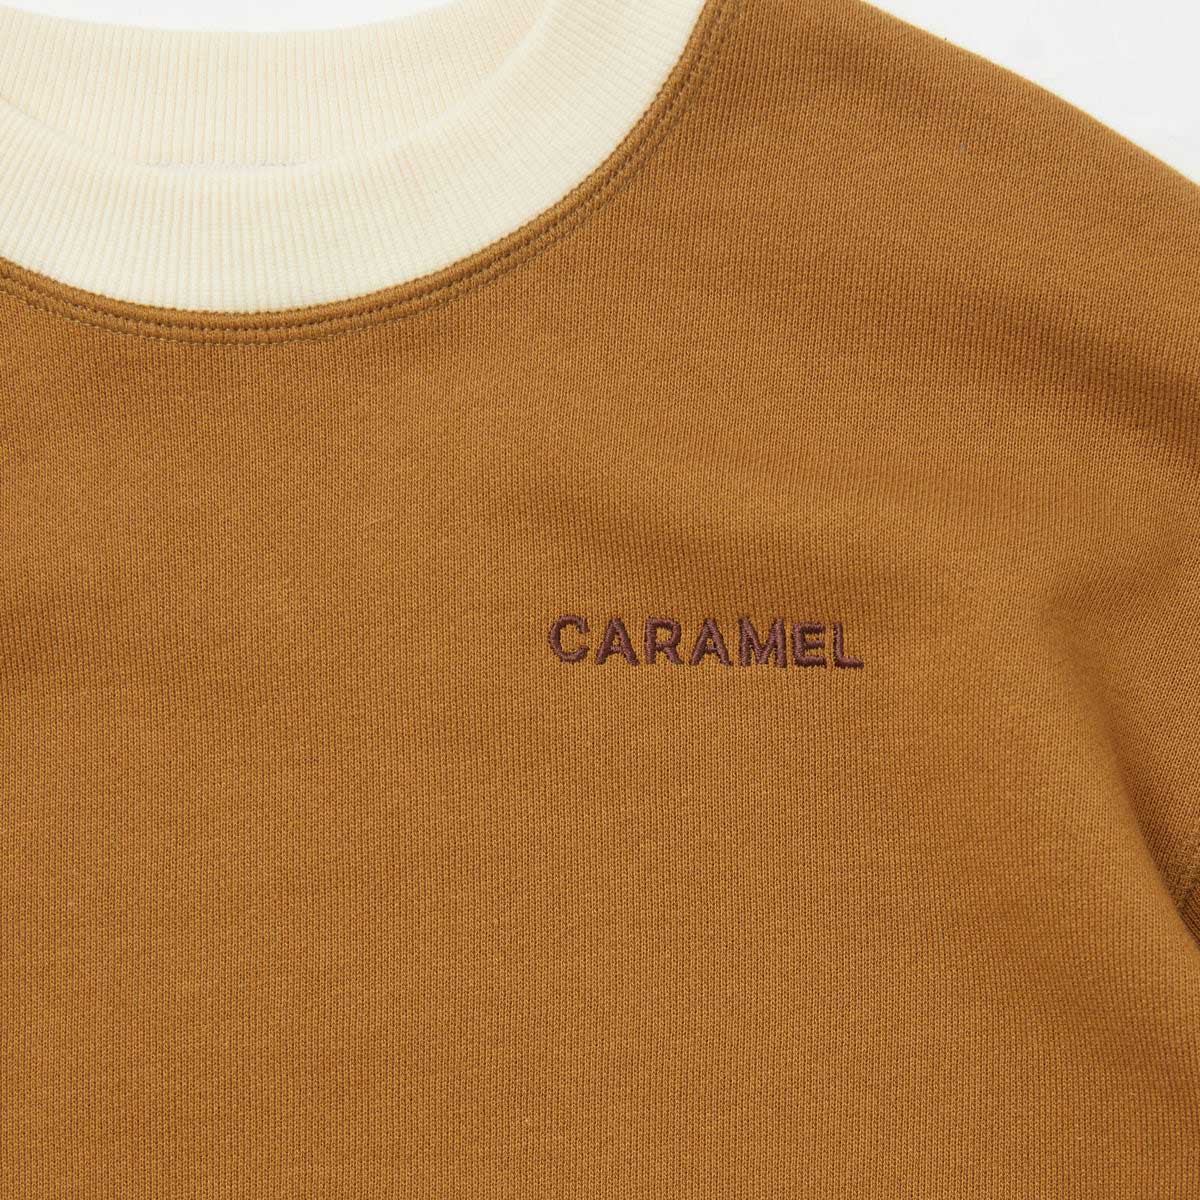 Boys & Girls Caramel Cotton T-Shirt